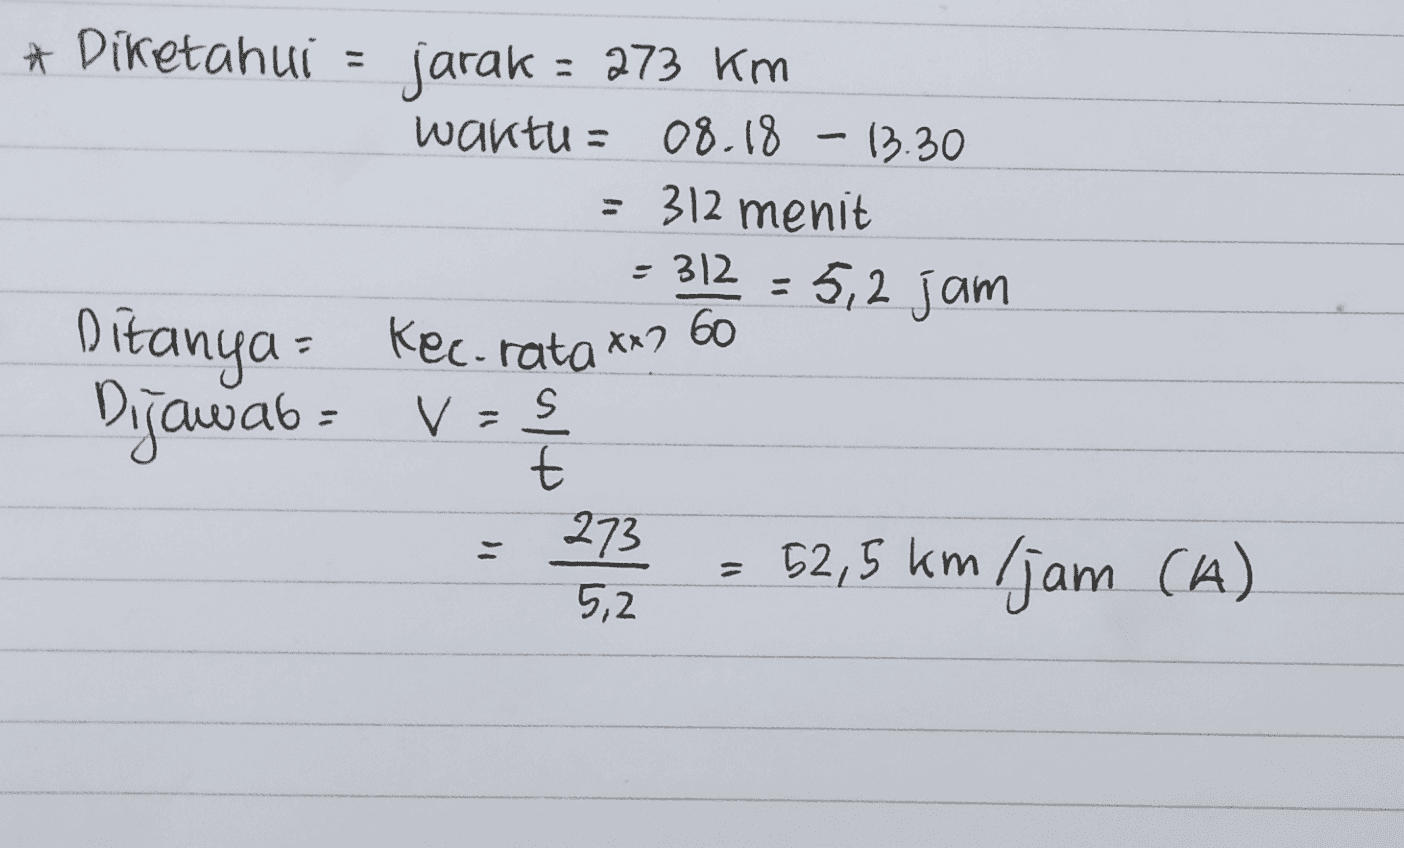 * Diketahui = jarak = 273 km waktu : 08.18 - 13.30 = 312 menit = 312=5,2 jam Ditanya - Kec-rata xx7 60 V s t 273 5,2 52,5 km (jam (A) I 